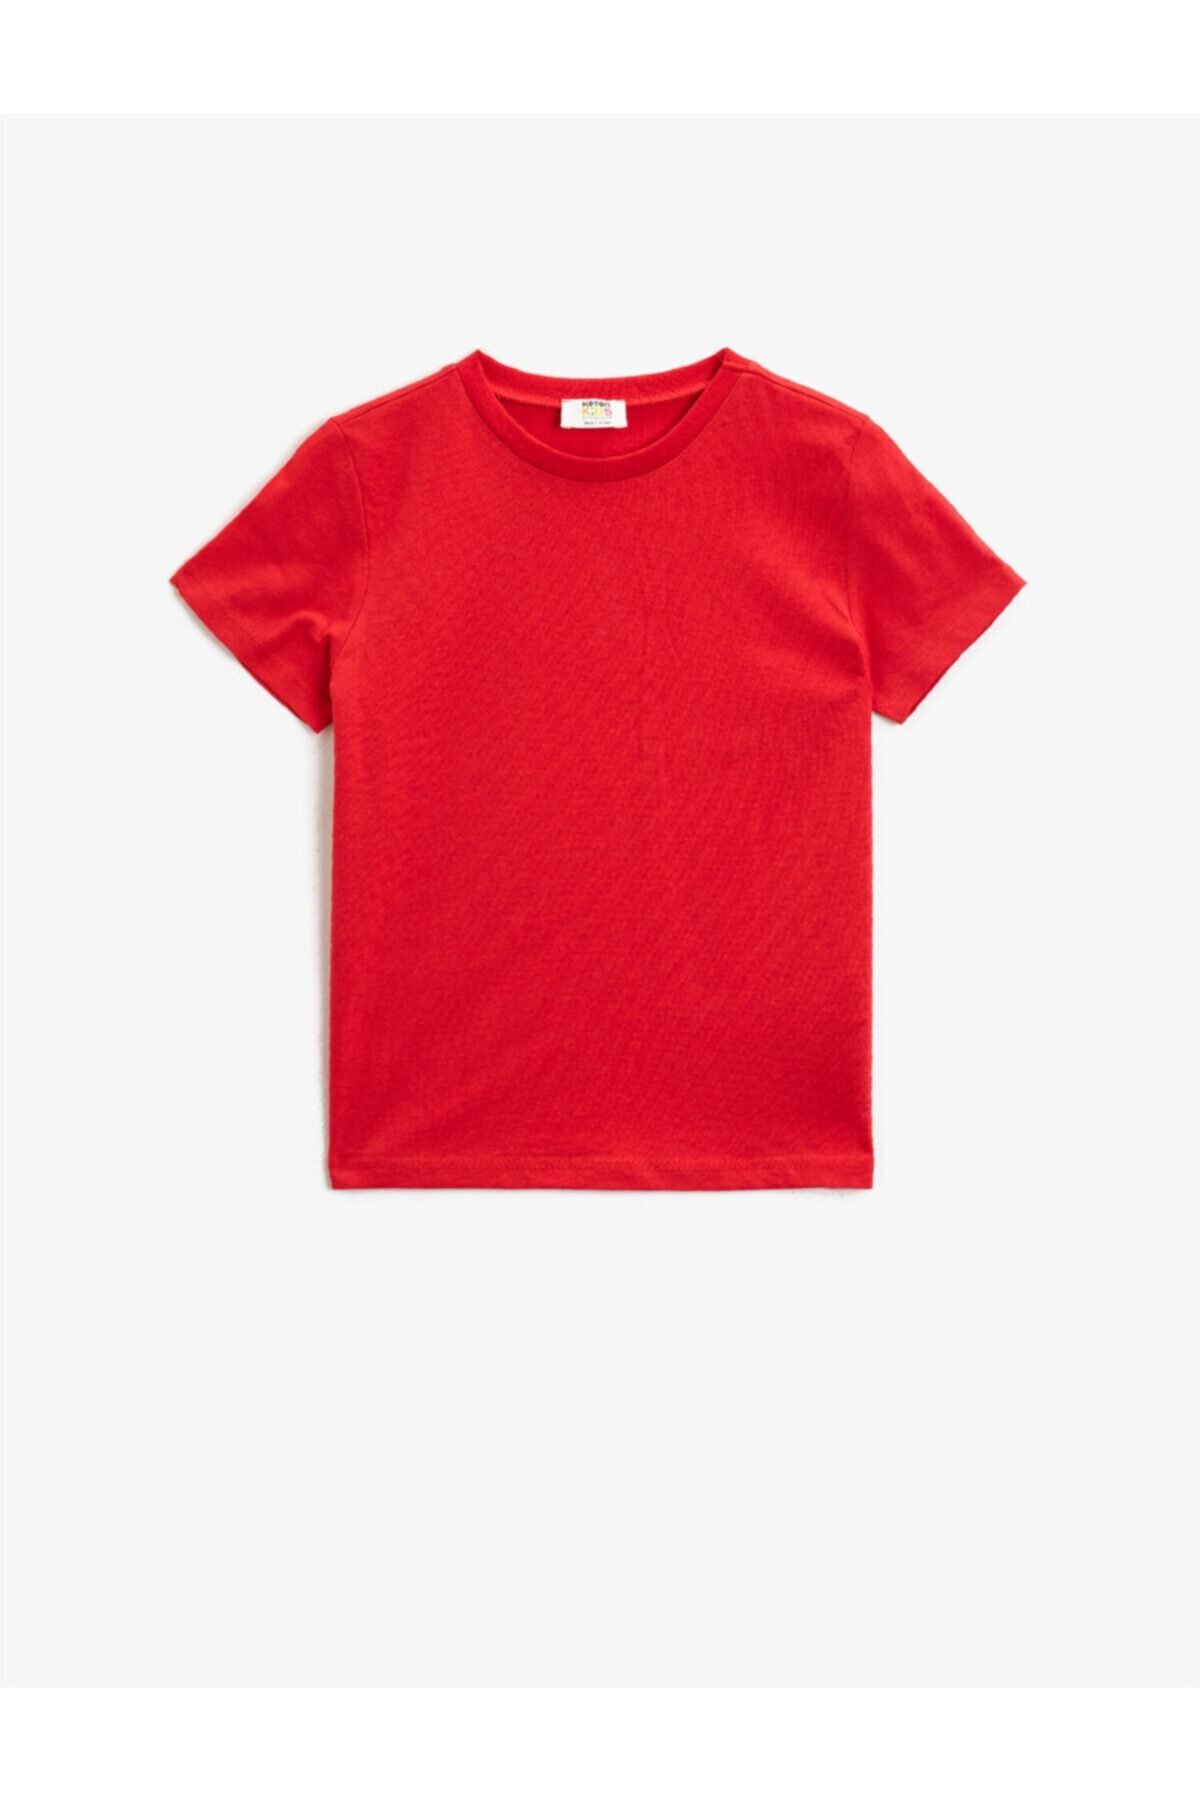 Koton Erkek Çocuk Kırmızı Kısa Kollu Basic T-Shirt